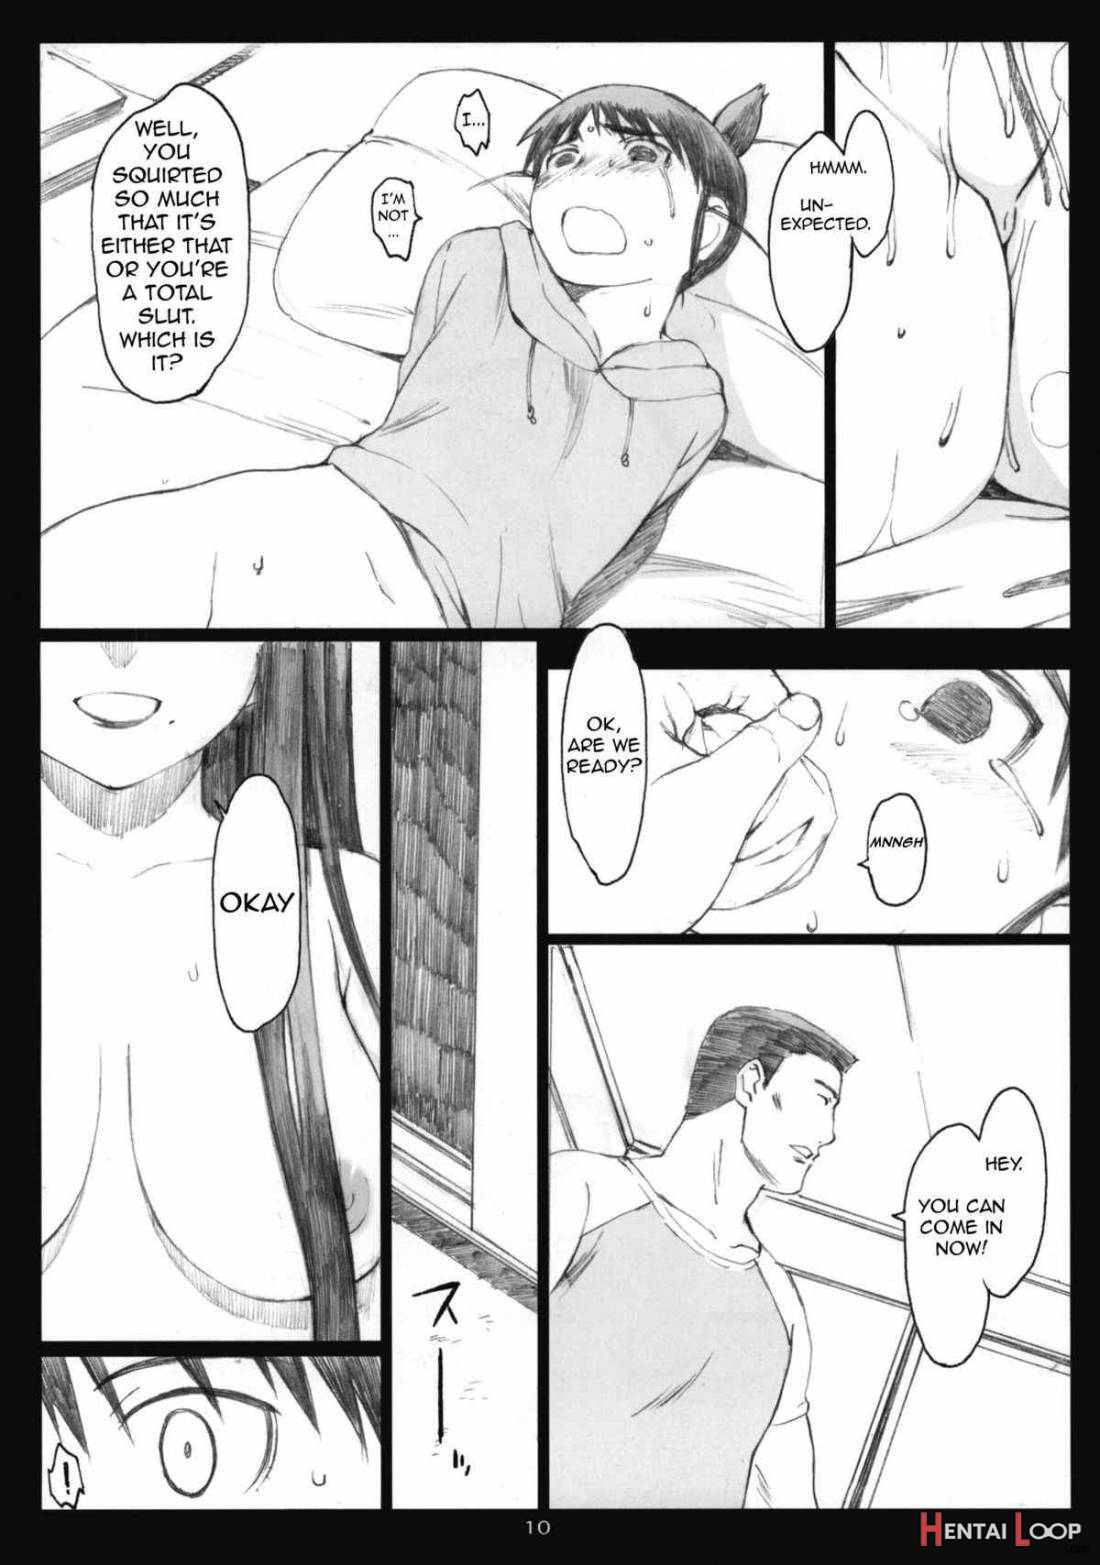 Oono Shiki #6 page 8